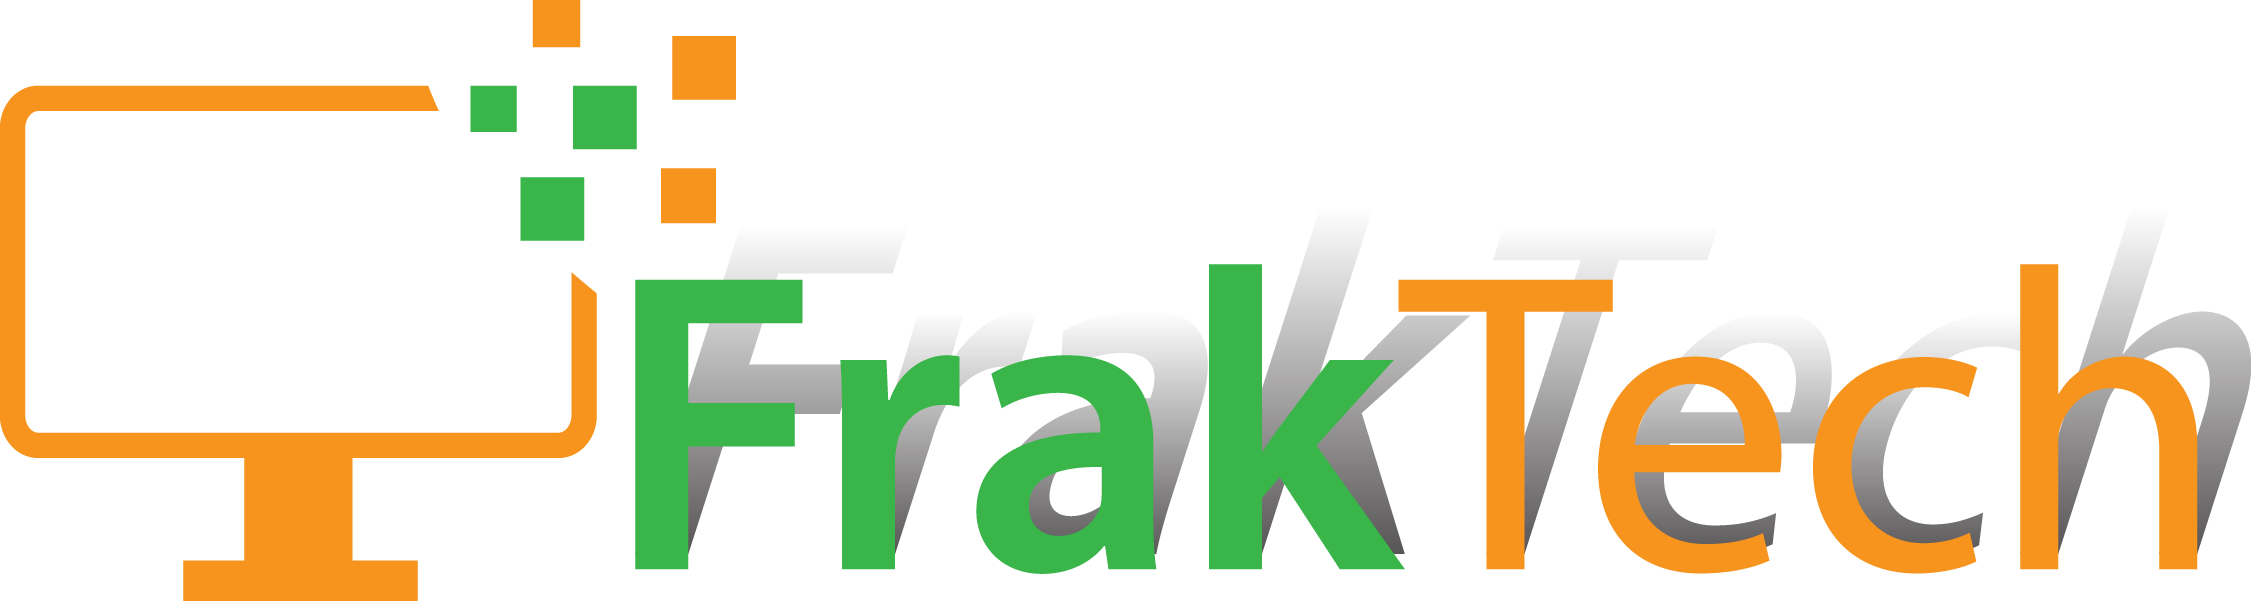 FrakTech